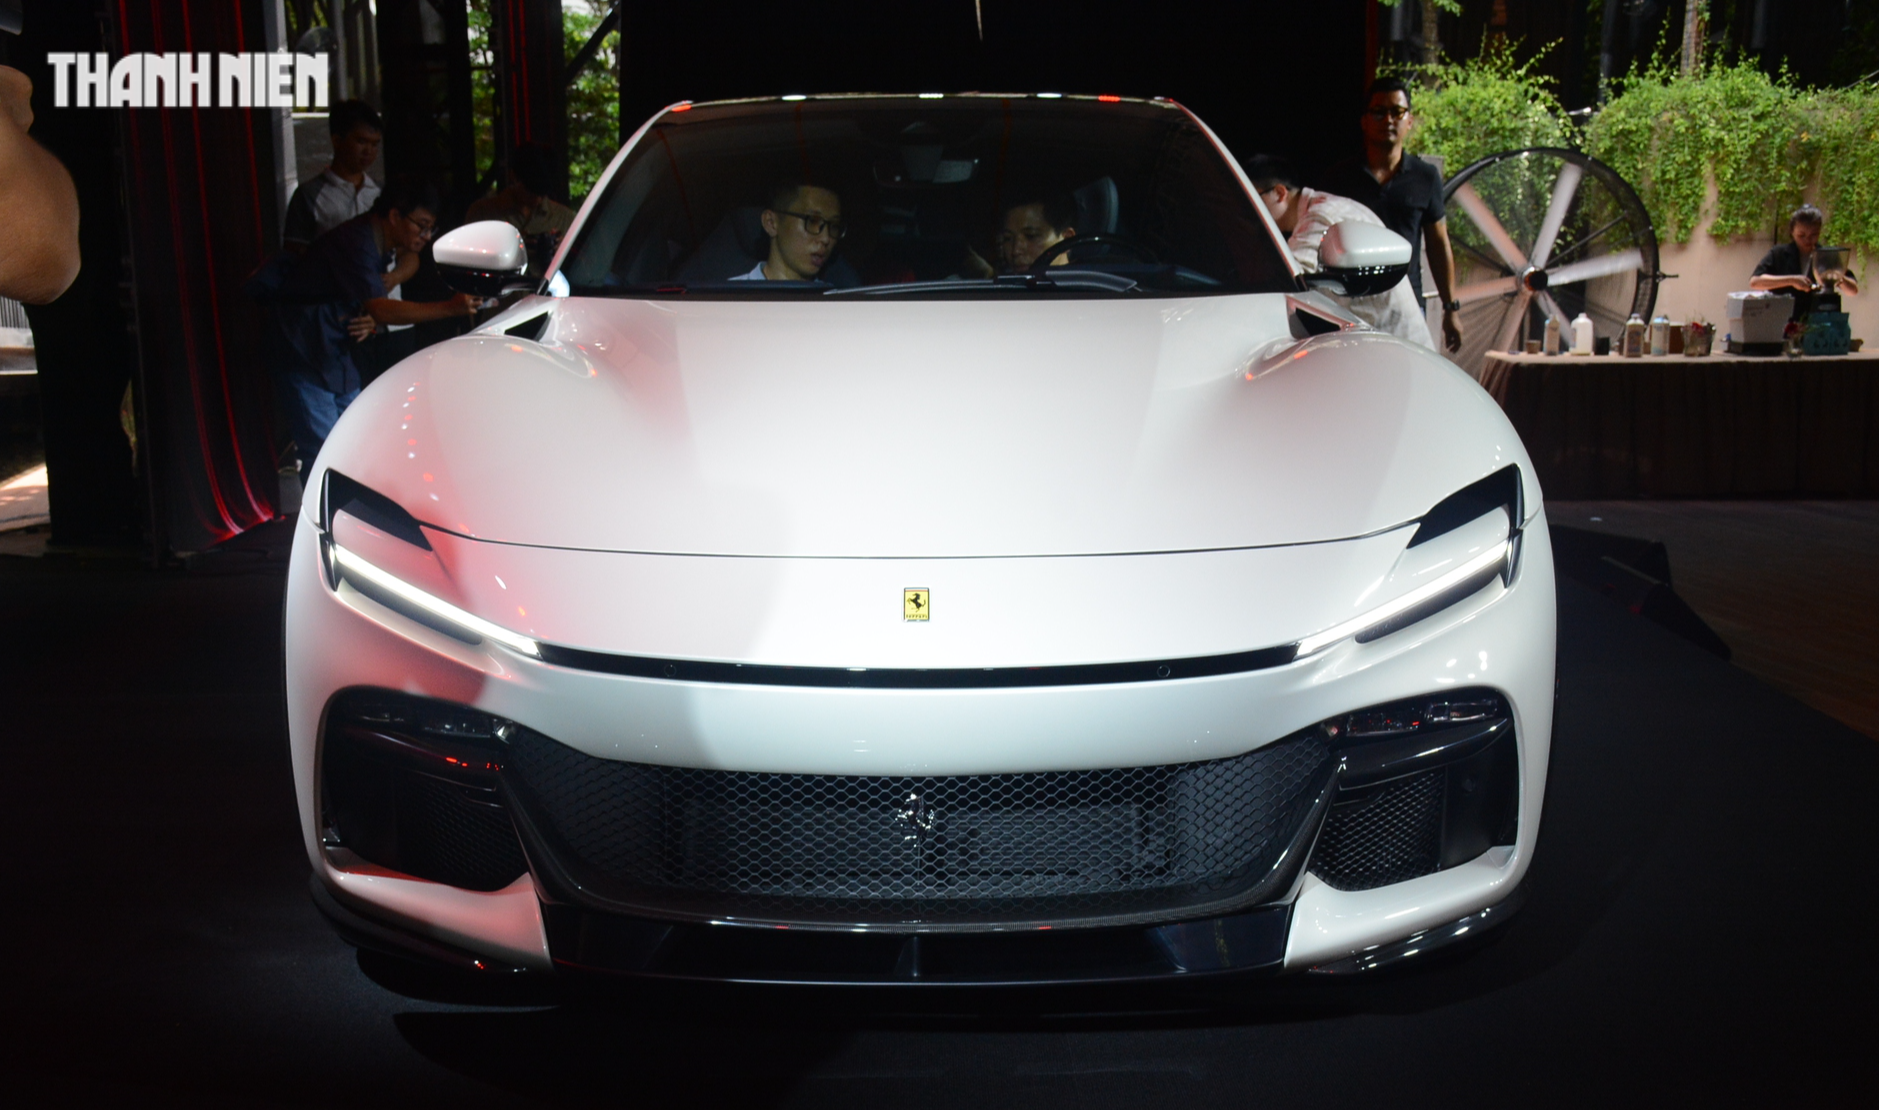 Siêu xe Ferrari gầm cao đầu tiên về Việt Nam, giá gần 40 tỉ đồng - Ảnh 5.